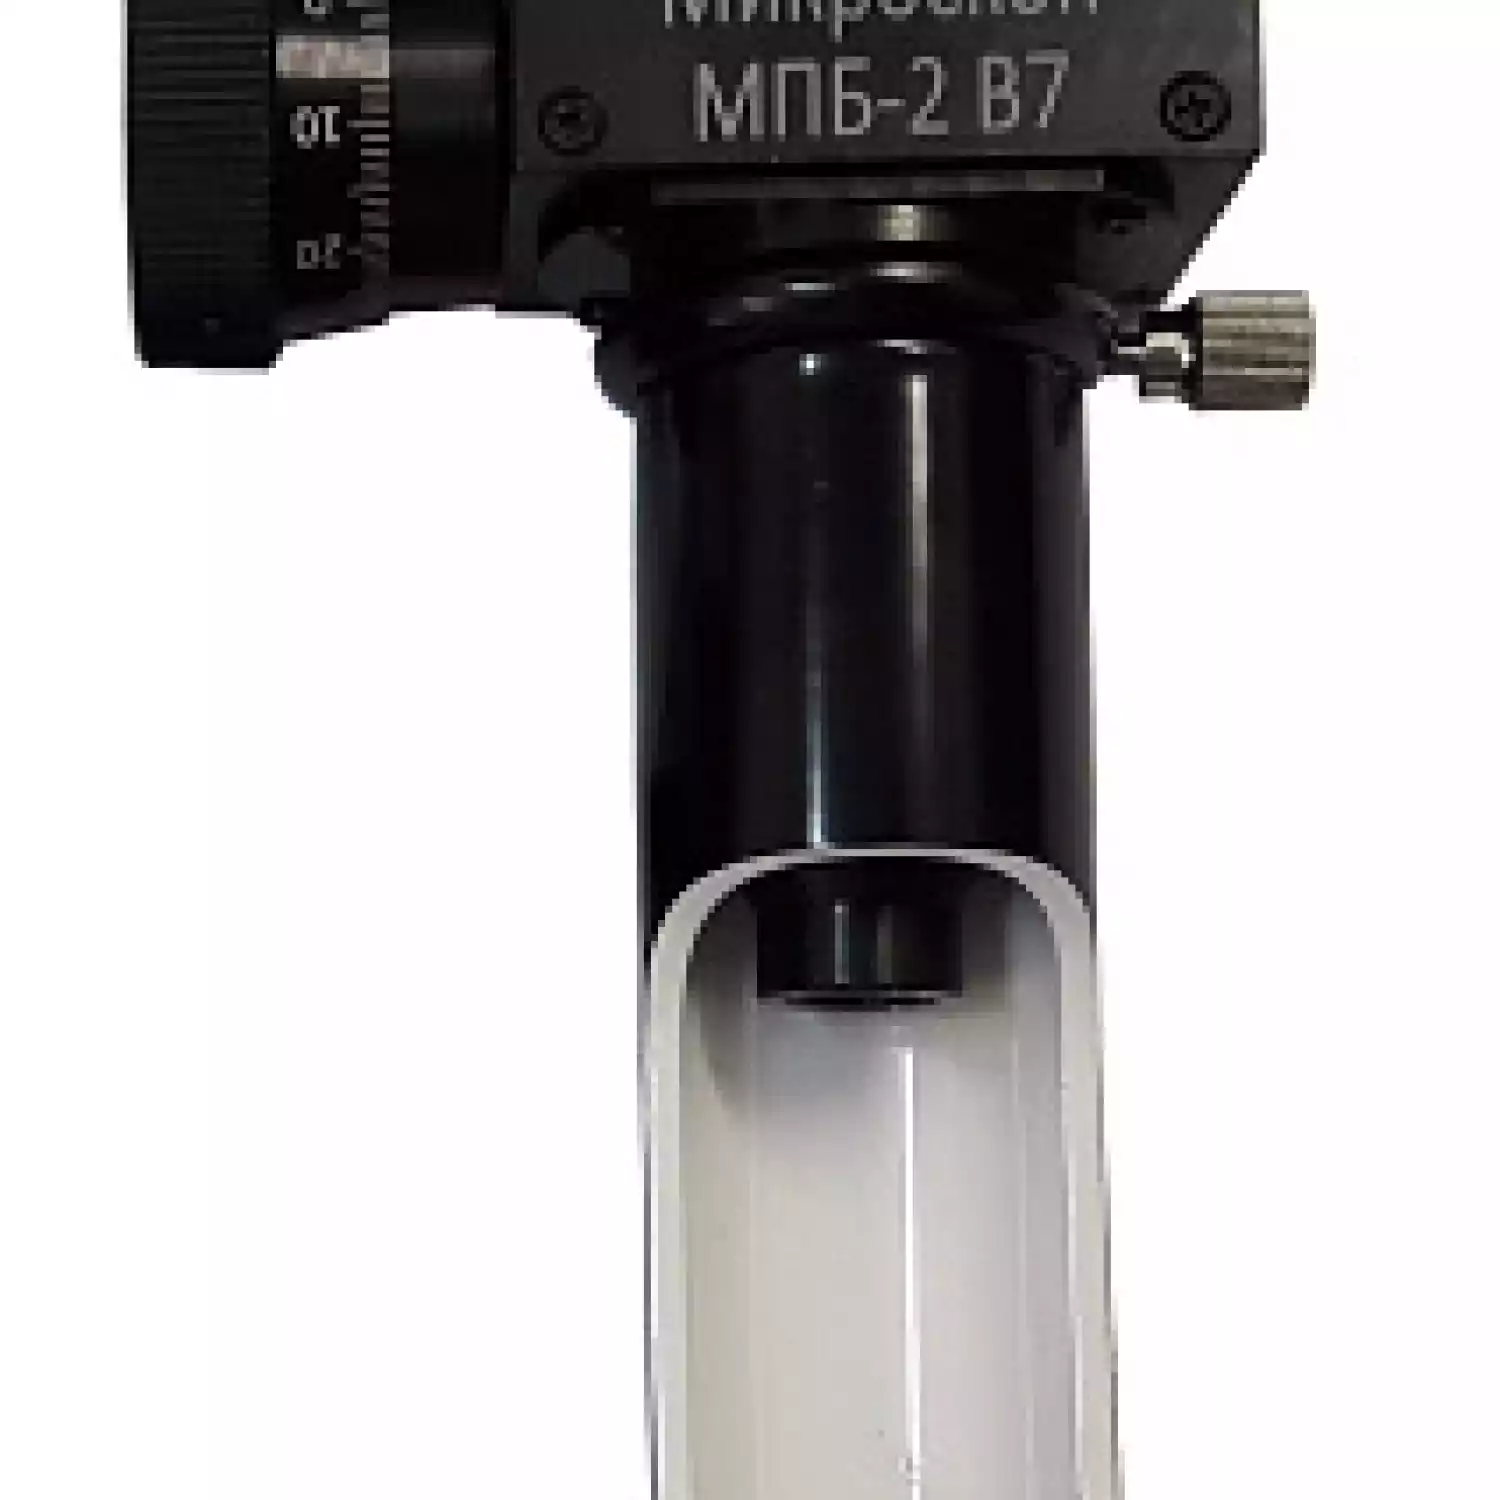 МПБ-2 В7 микроскоп отсчётный Бринелль - 1